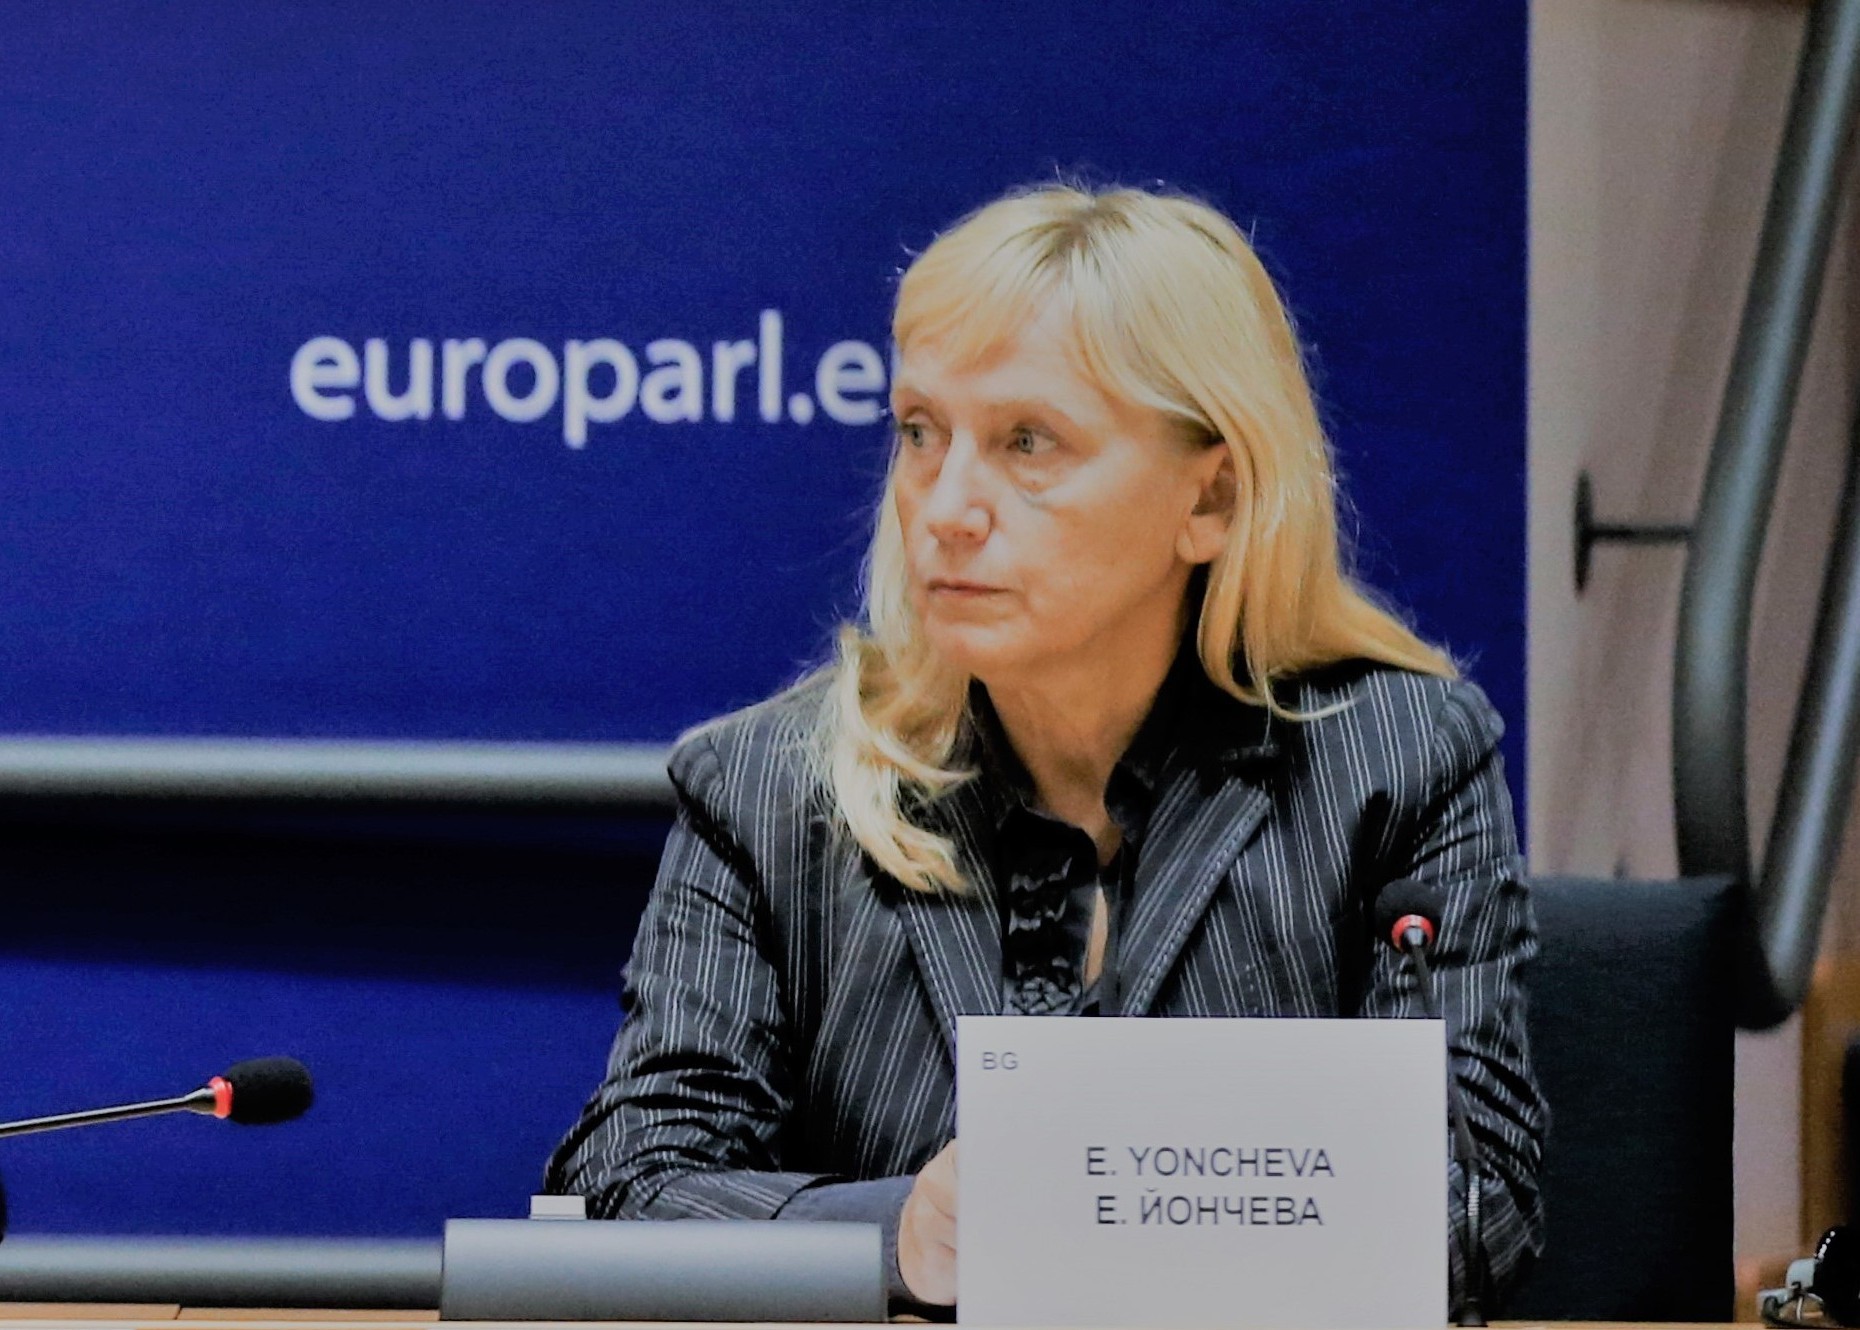 Елена Йончева беше избрана в мониторинговата група за демокрация на Европейския парламент